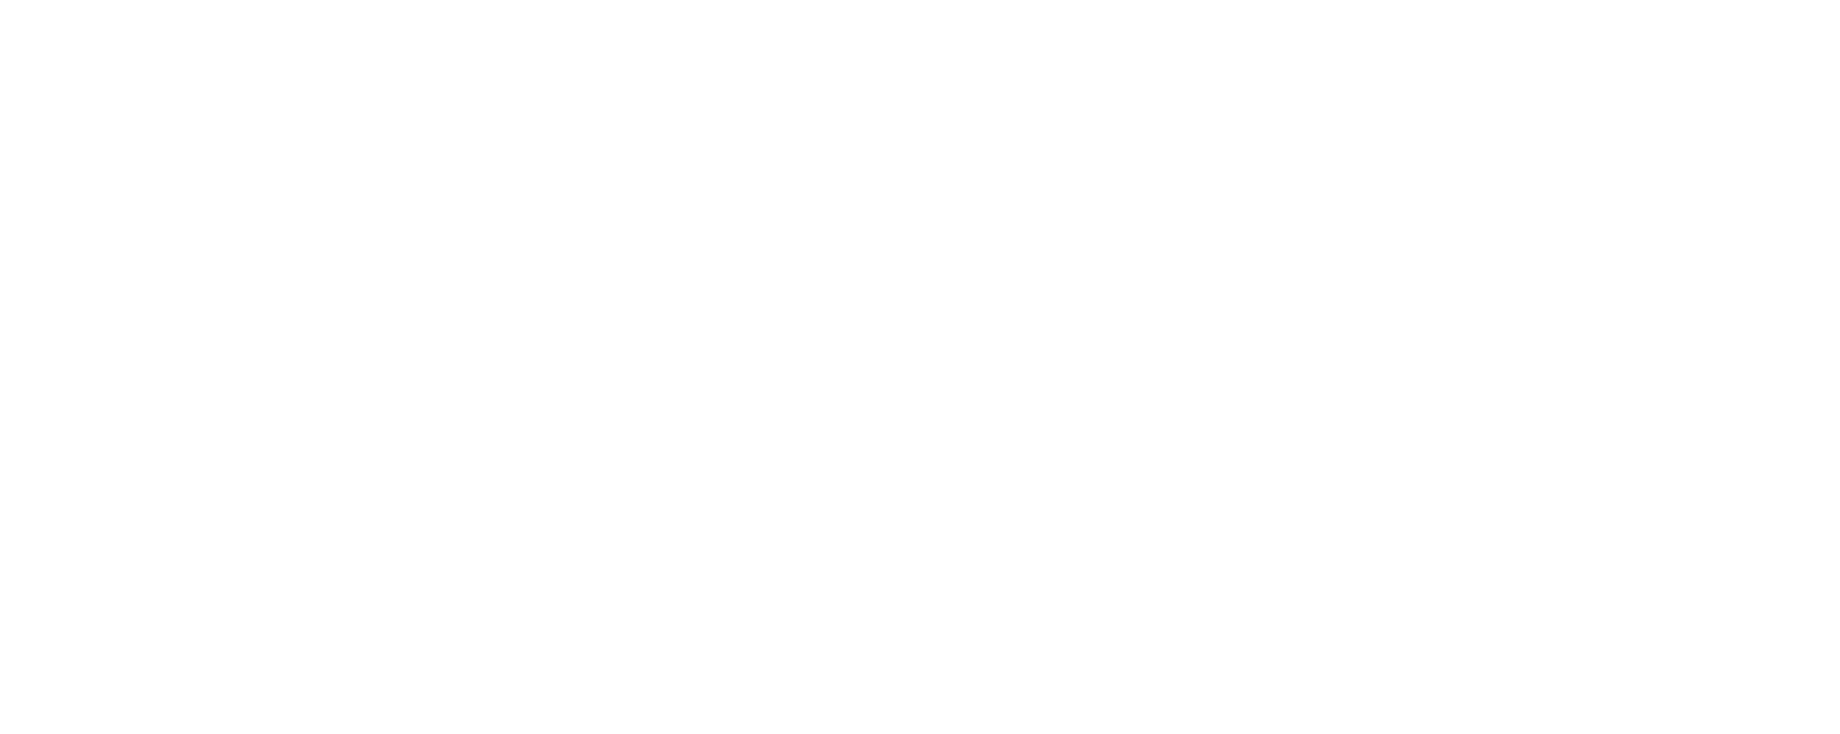 Billy's Boudin